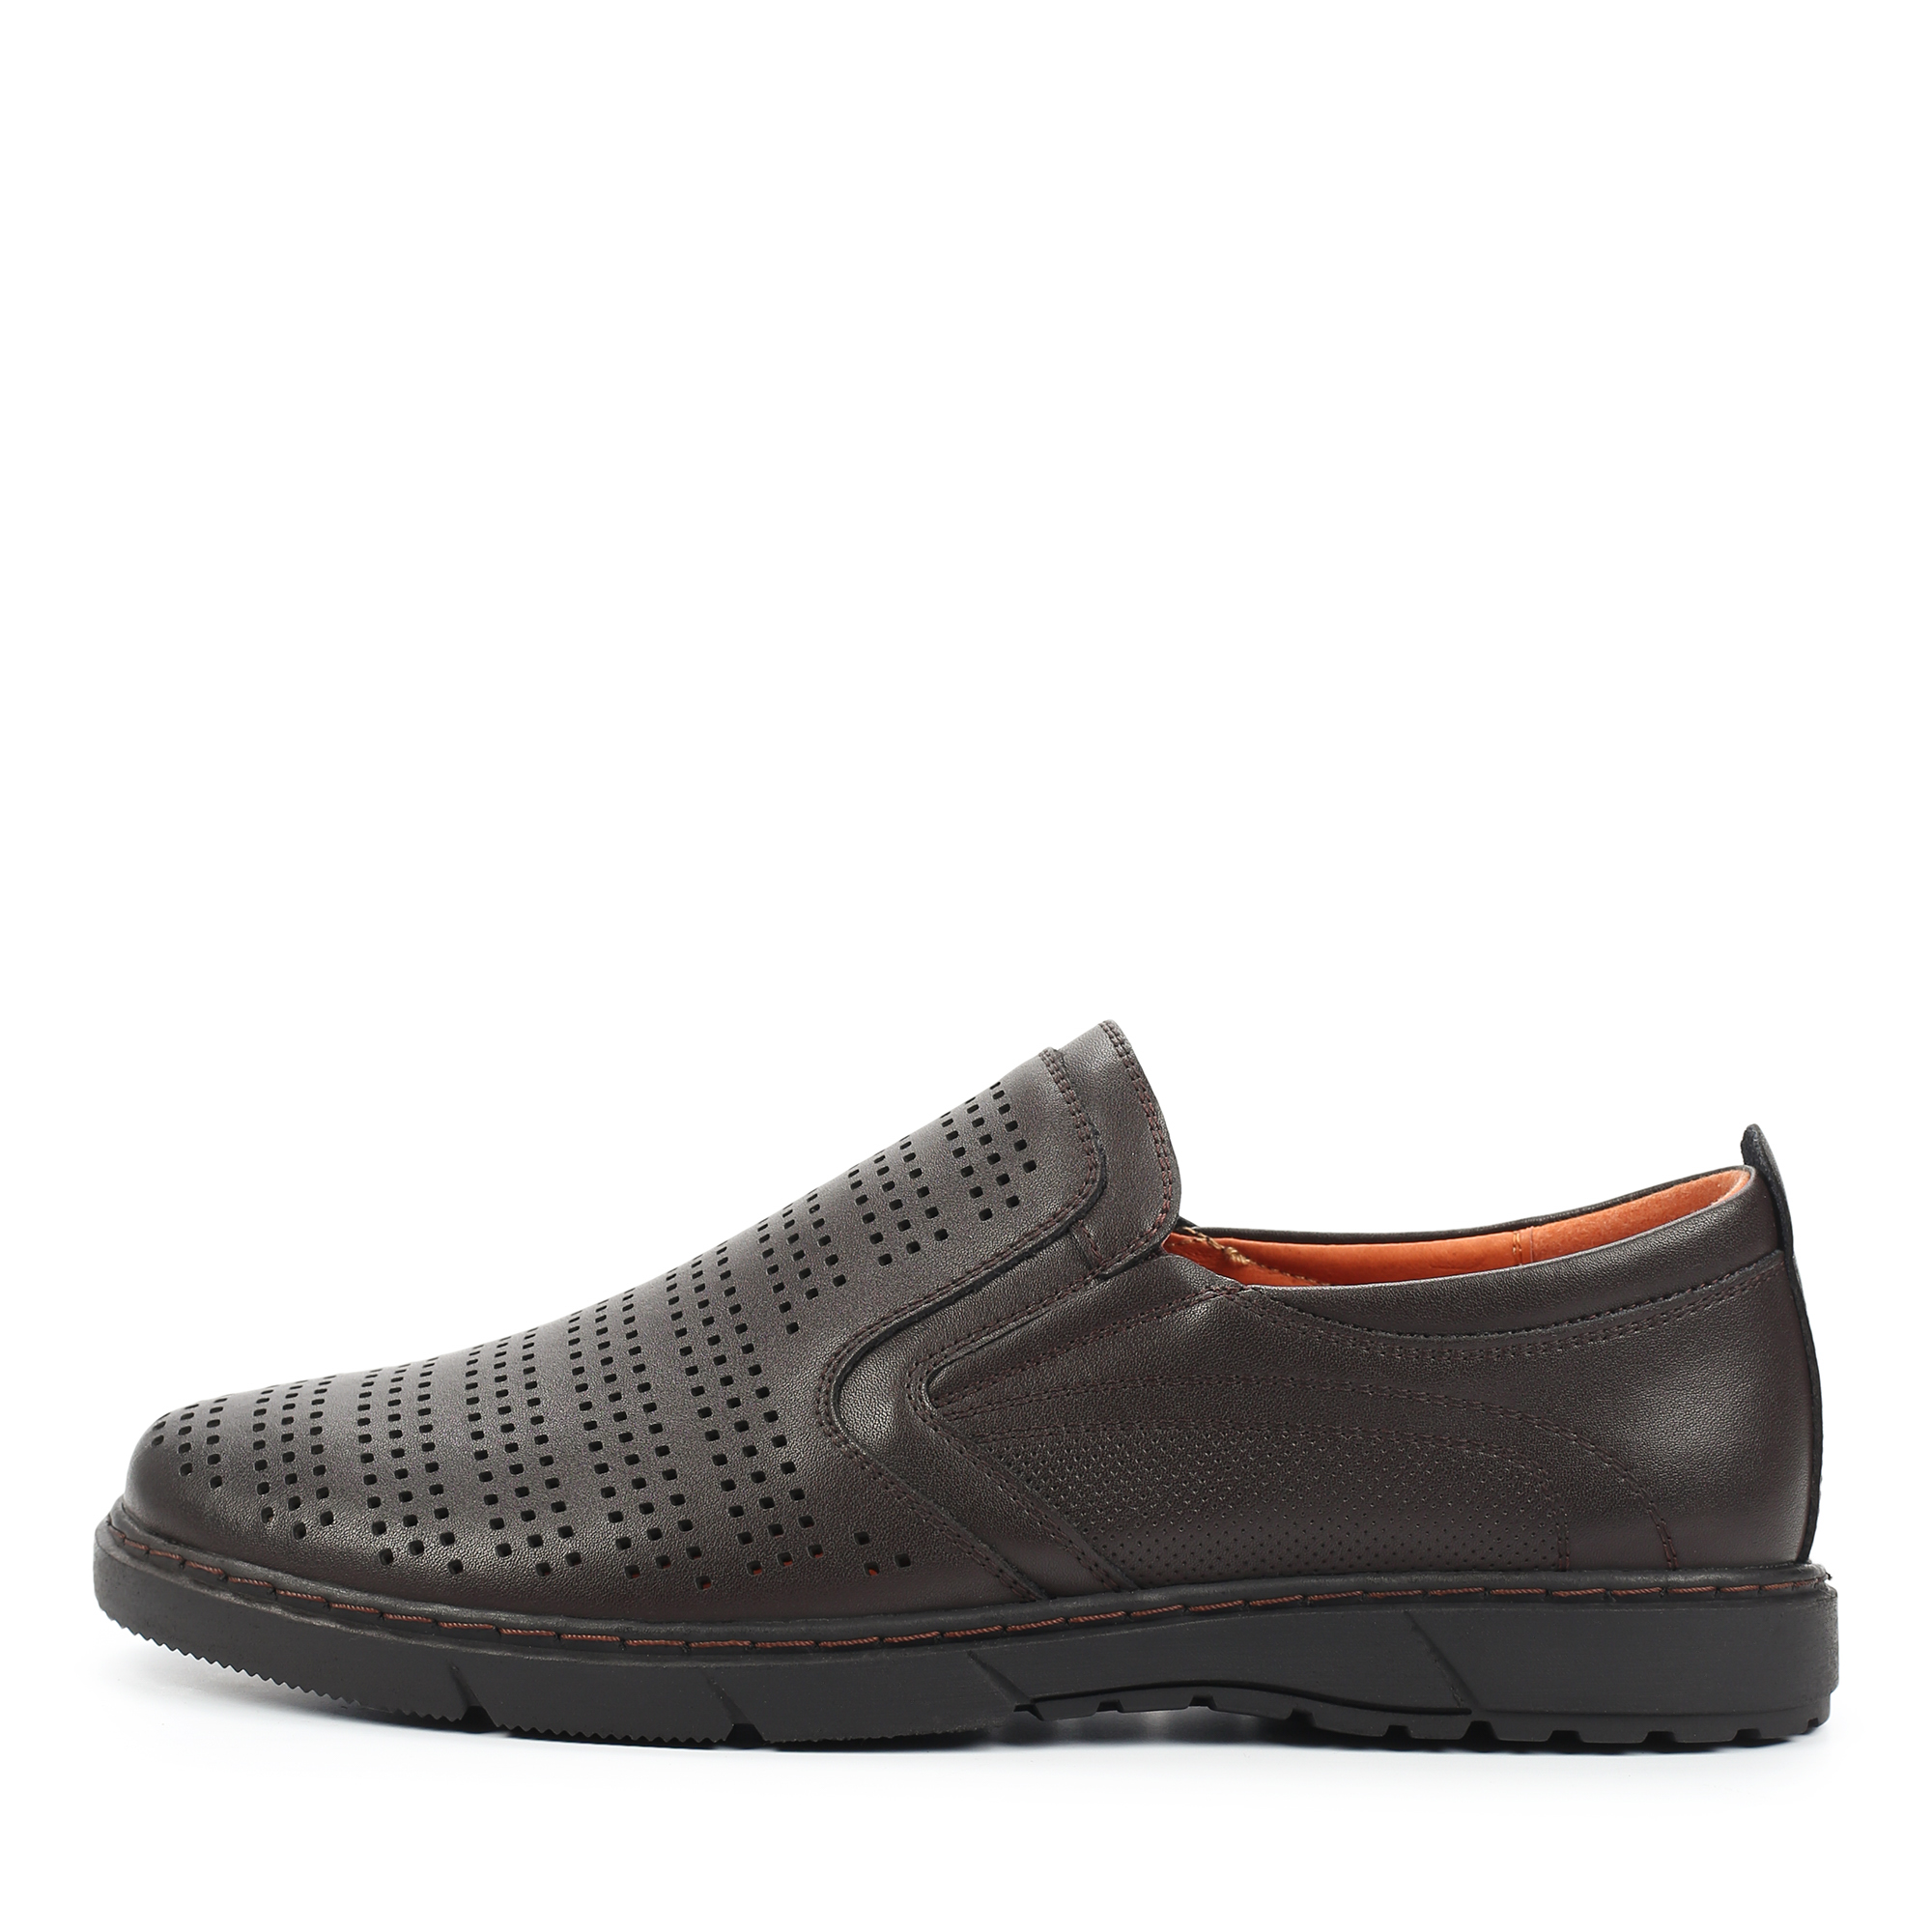 Туфли/полуботинки MUNZ Shoes 104-612A-1609, цвет темно-коричневый, размер 40 - фото 1